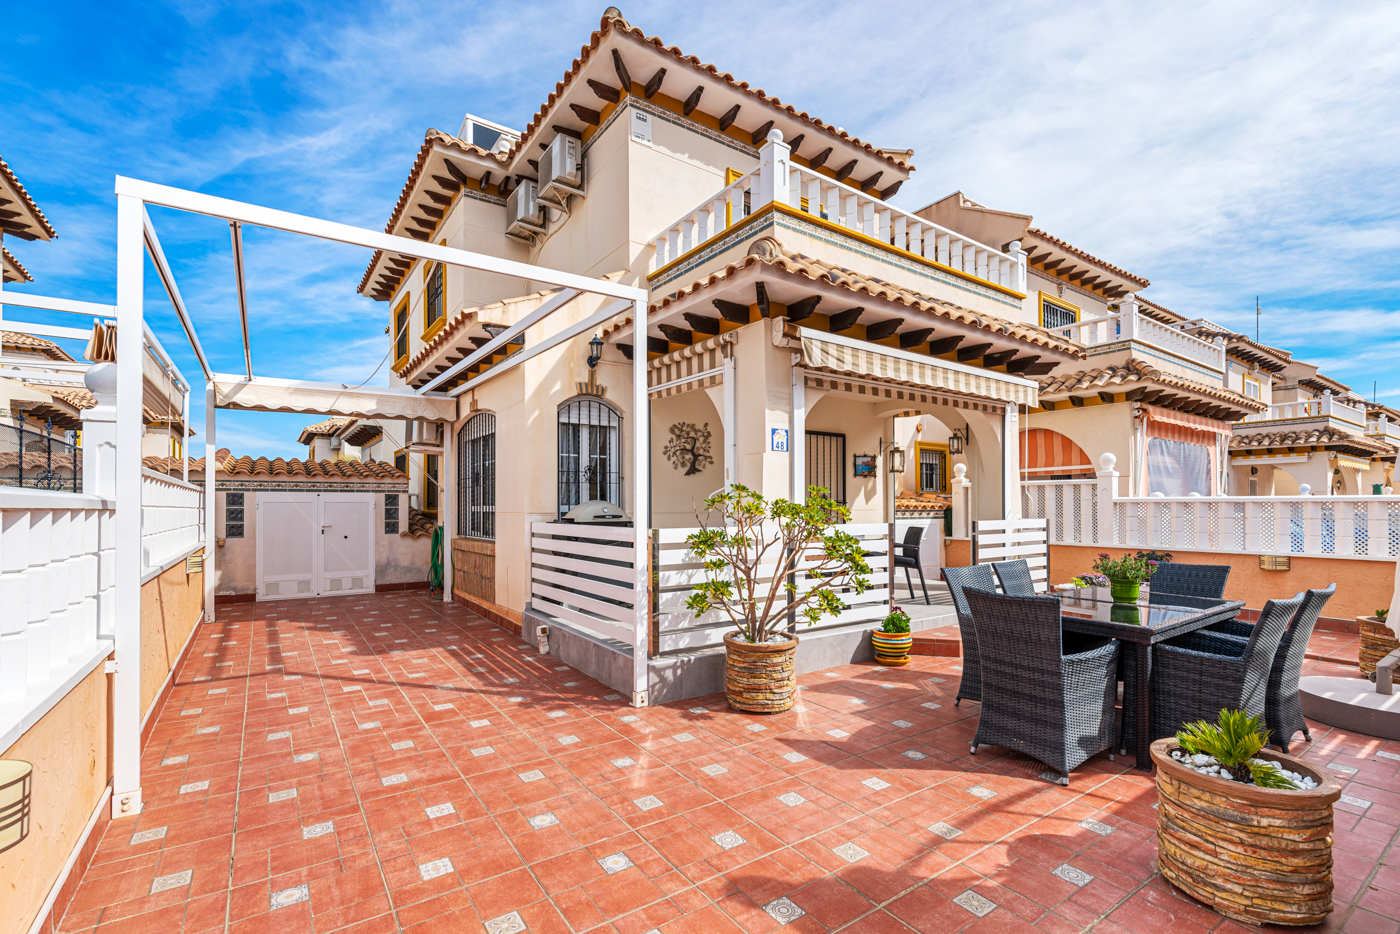 For sale: 3 bedroom house / villa in Orihuela Costa, Costa Blanca